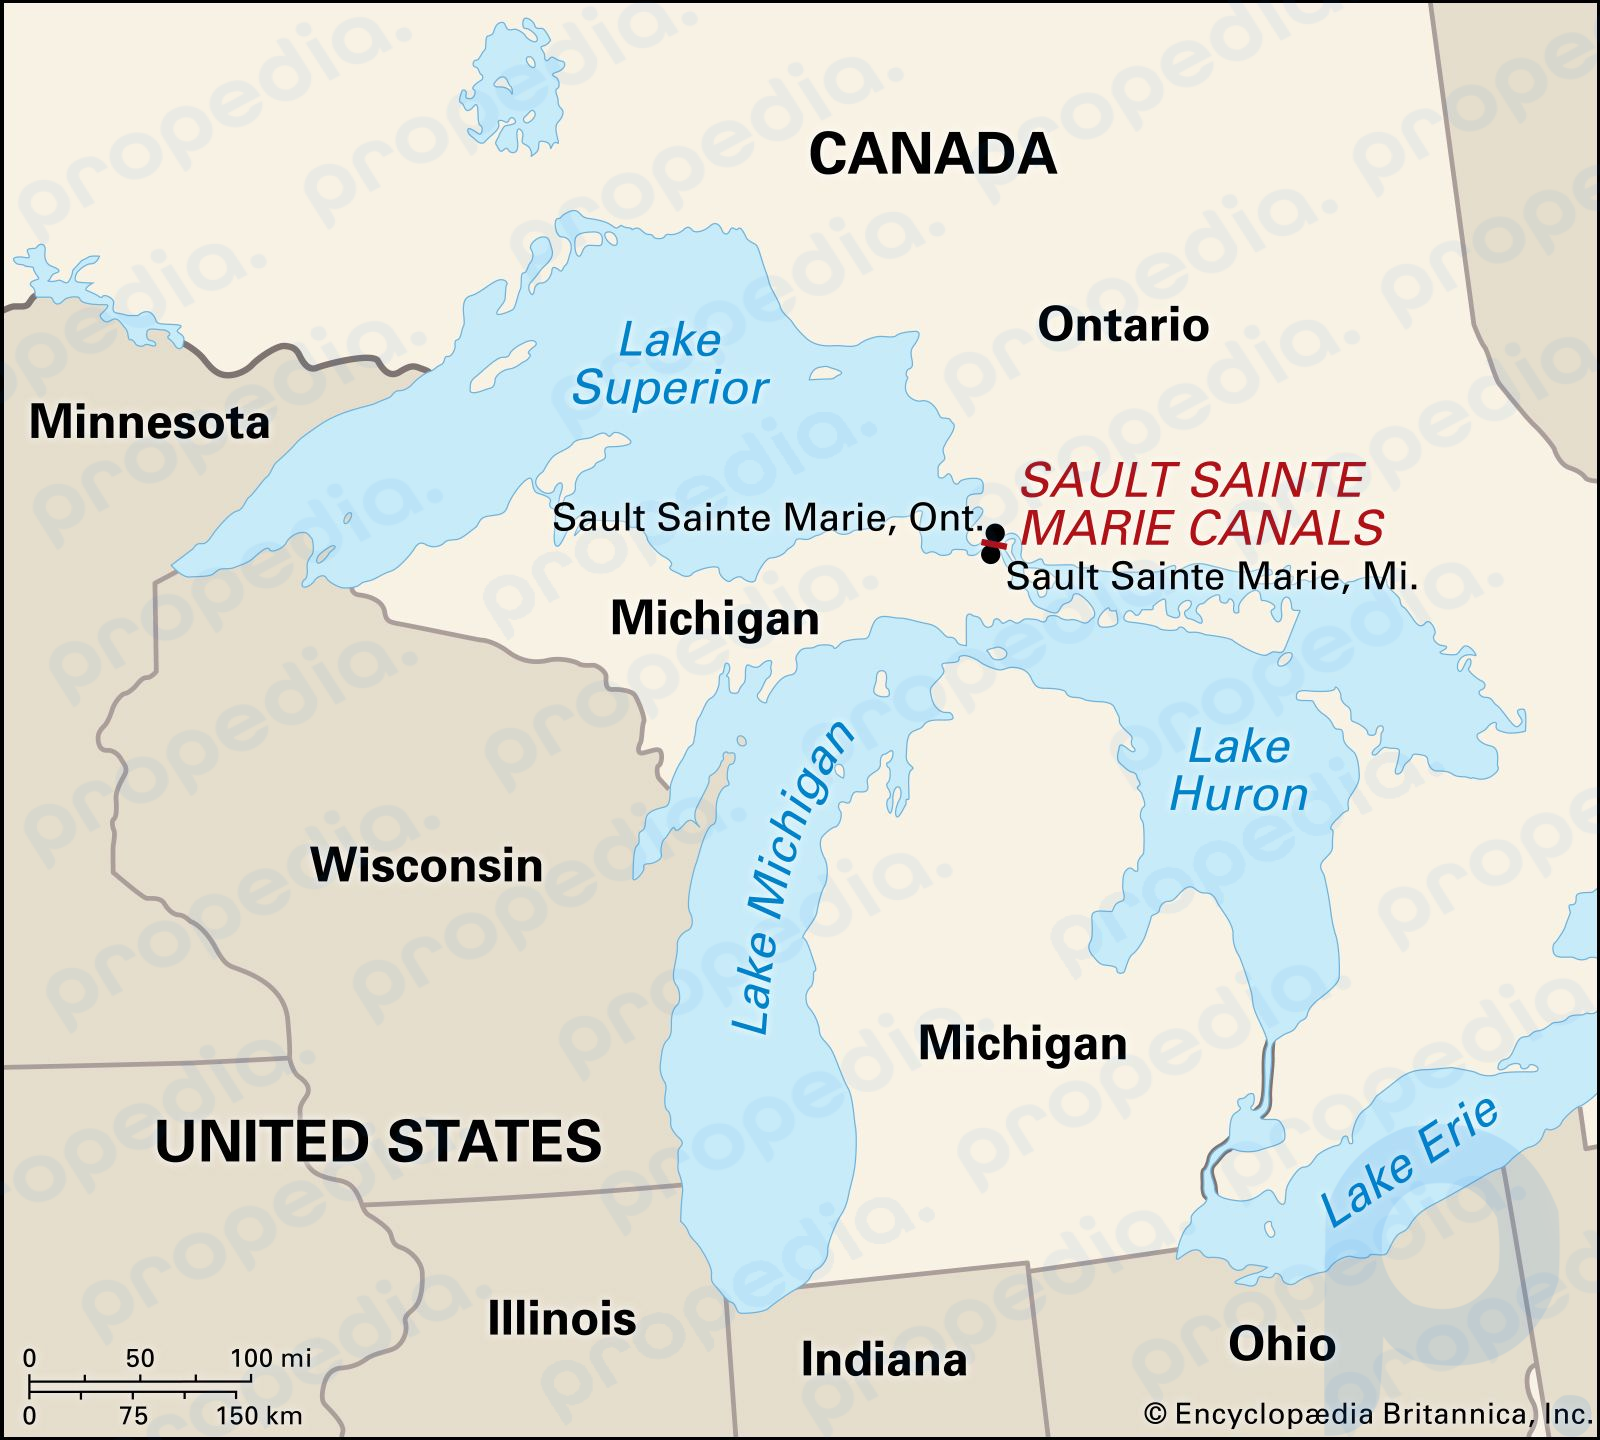 Sault Sainte Marie, Michigan, liegt auf der anderen Seite des St. Marys River von seiner Partnerstadt Sault Sainte Marie, Ontario.